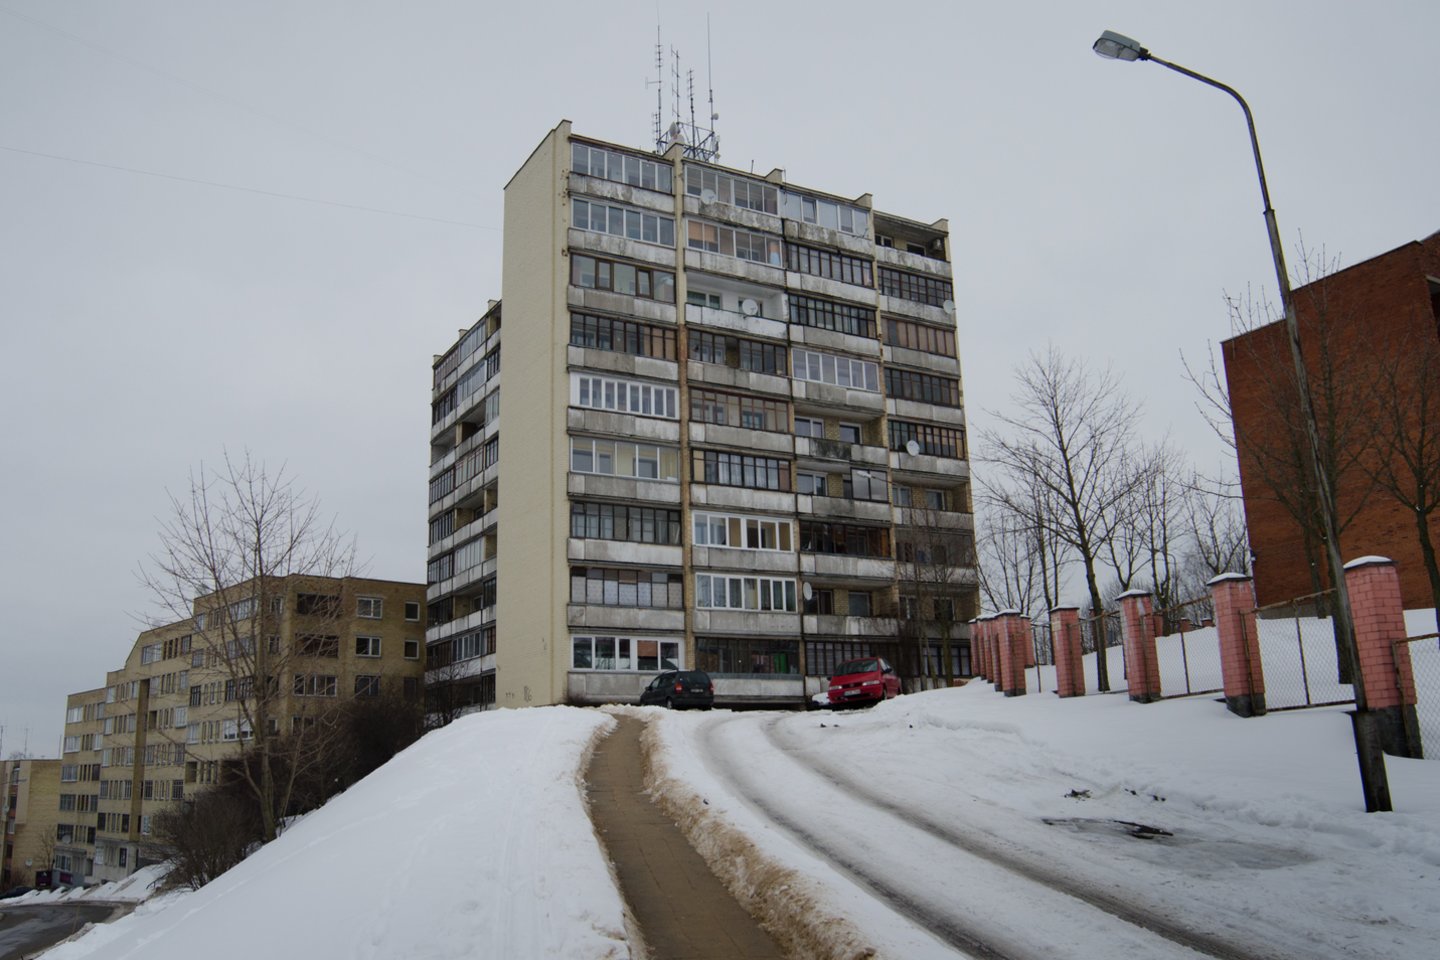 Socialiniai būstai Lietuvoje įvairios būklės, kol kas stengiamasi suteikti stogą virš galvos.<br>D. Umbraso nuotr.